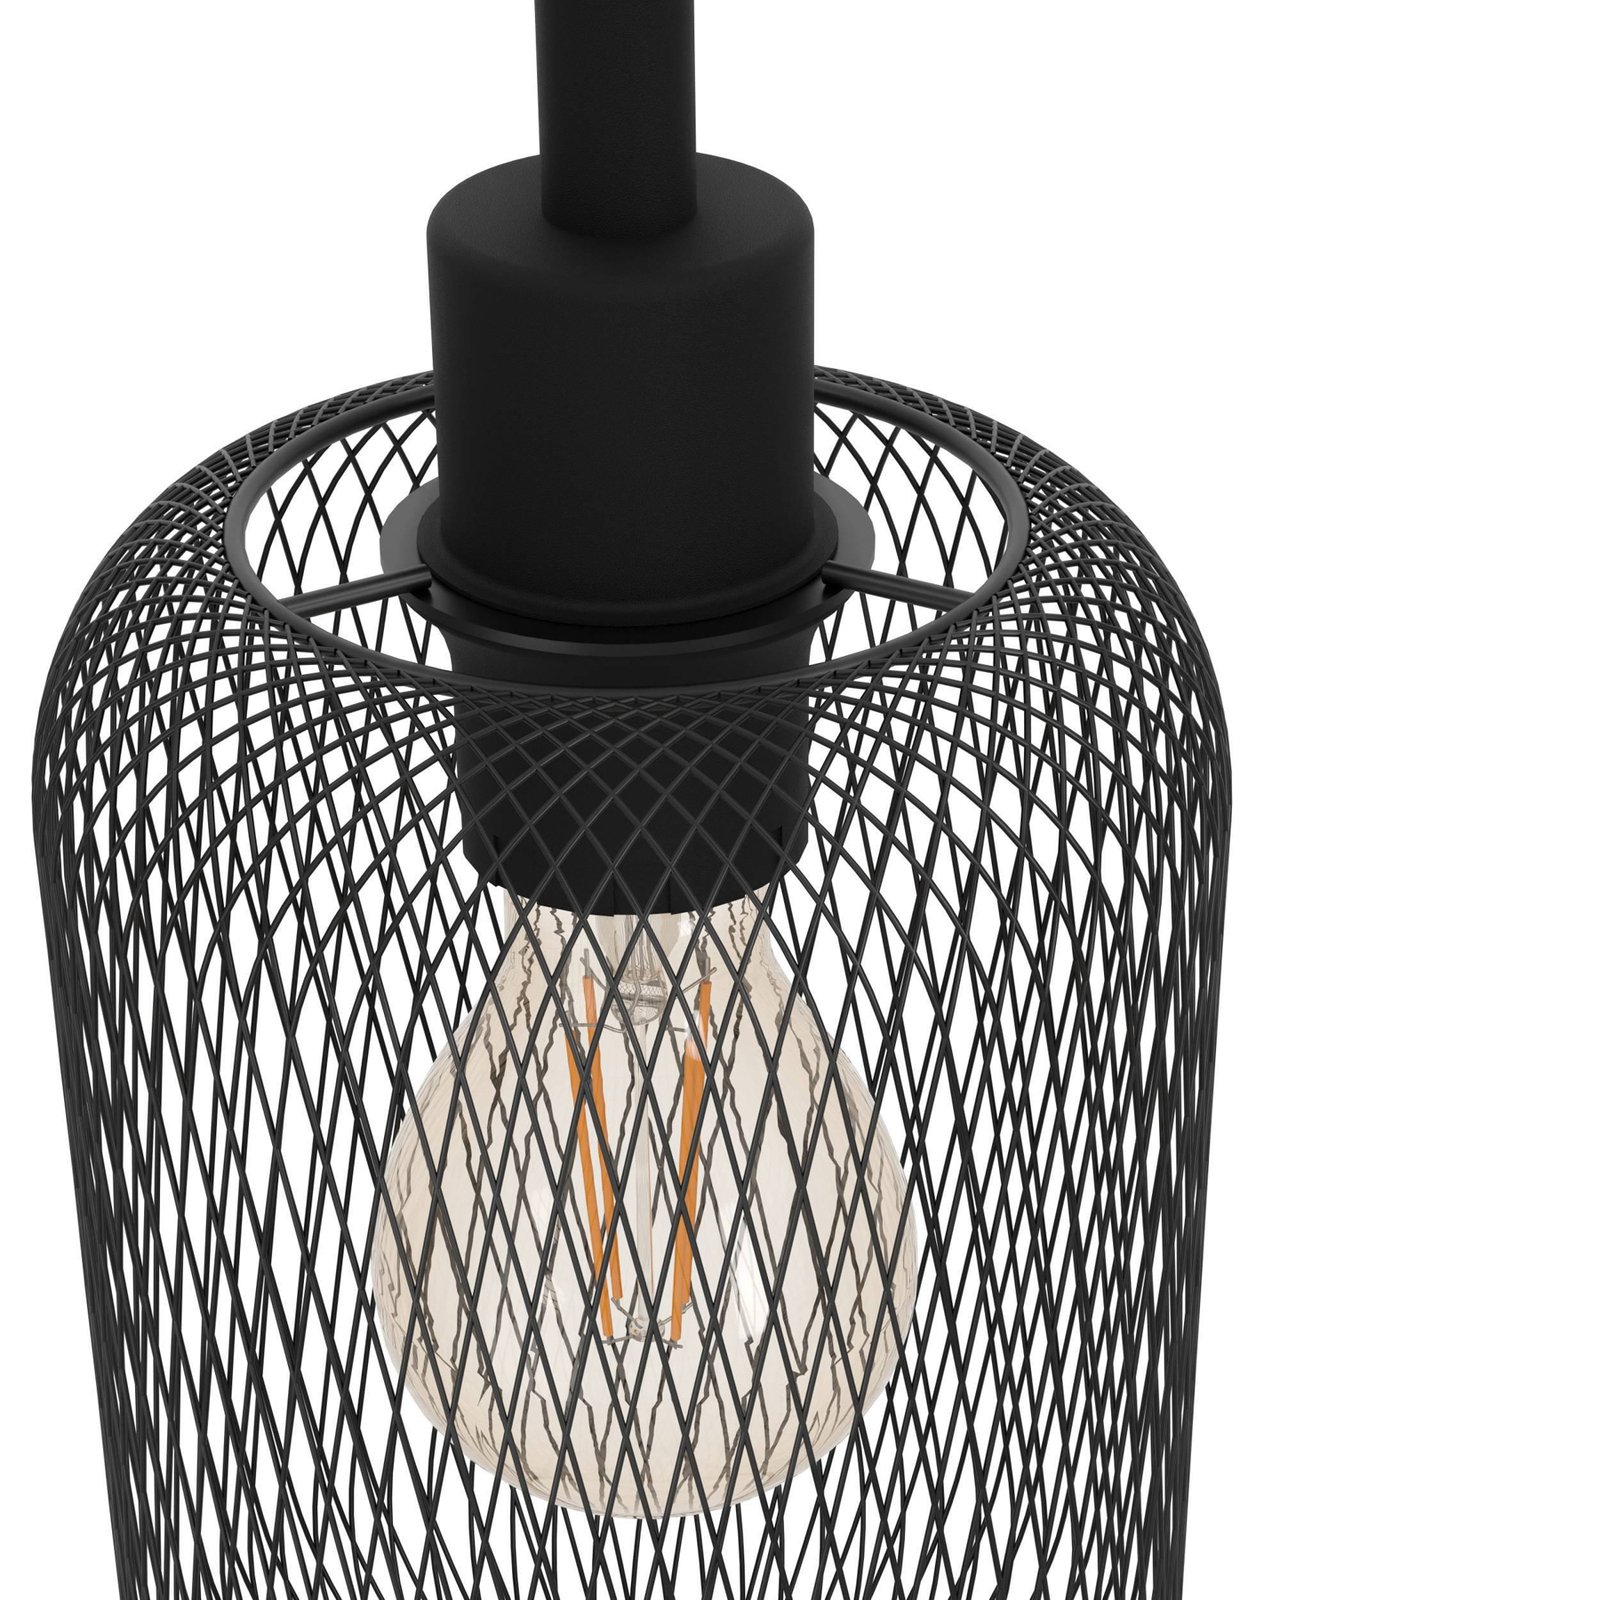 Wrington pendant light, length 74 cm, black, 3-bulb, steel